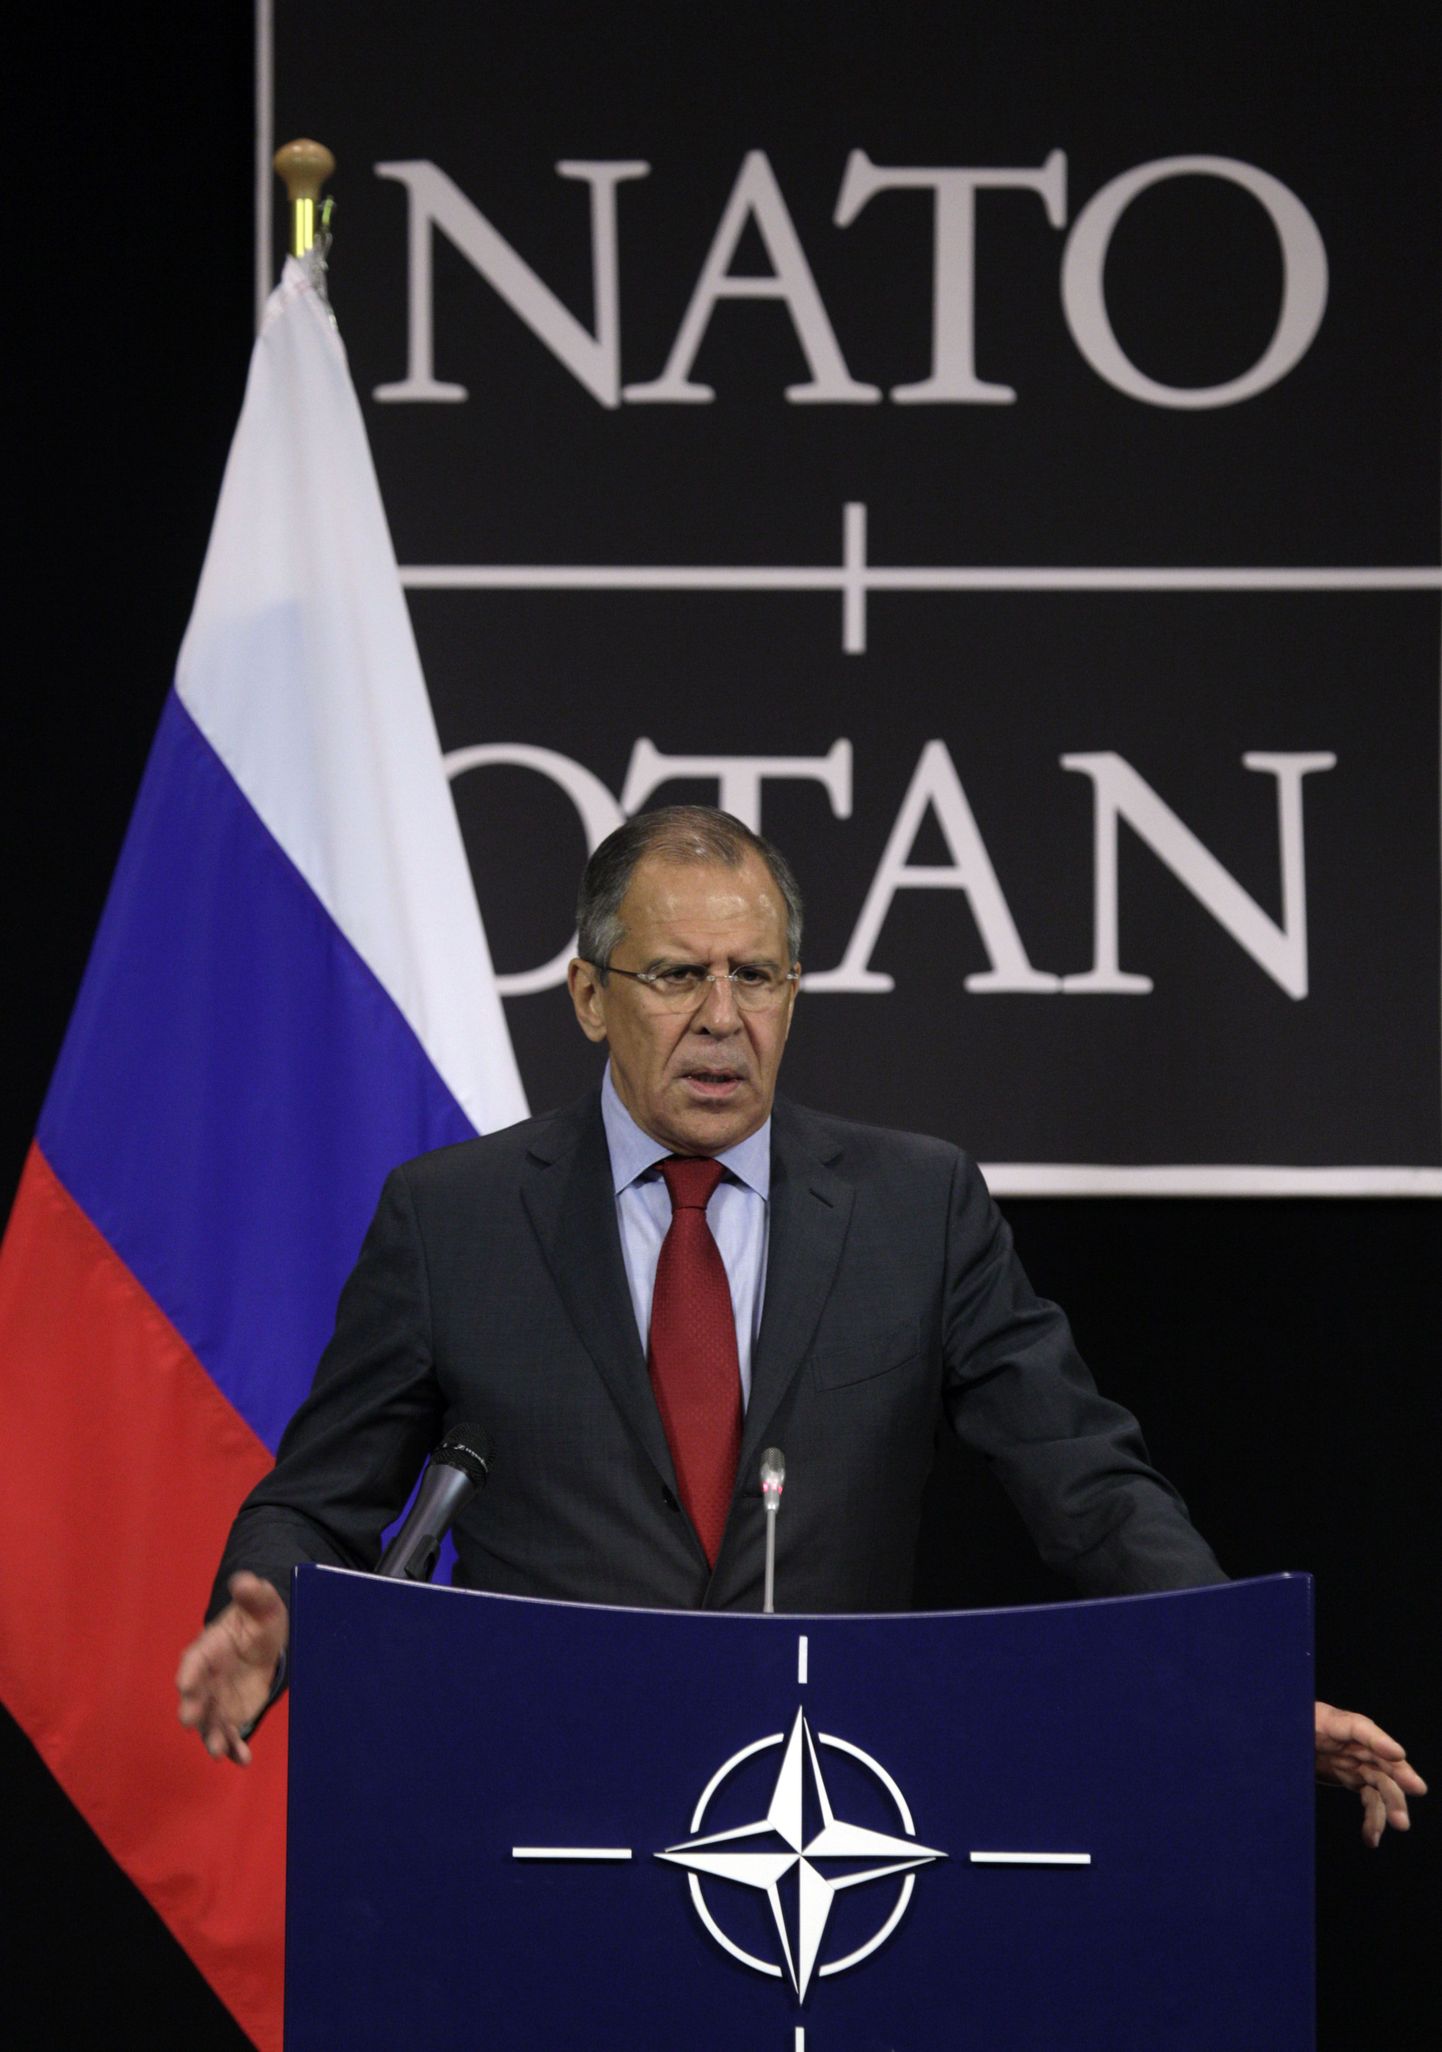 Venemaa välisminister Sergey Lavrov 2012. aastal sõna võtmas NATO-Venemaa nõukogu istungil